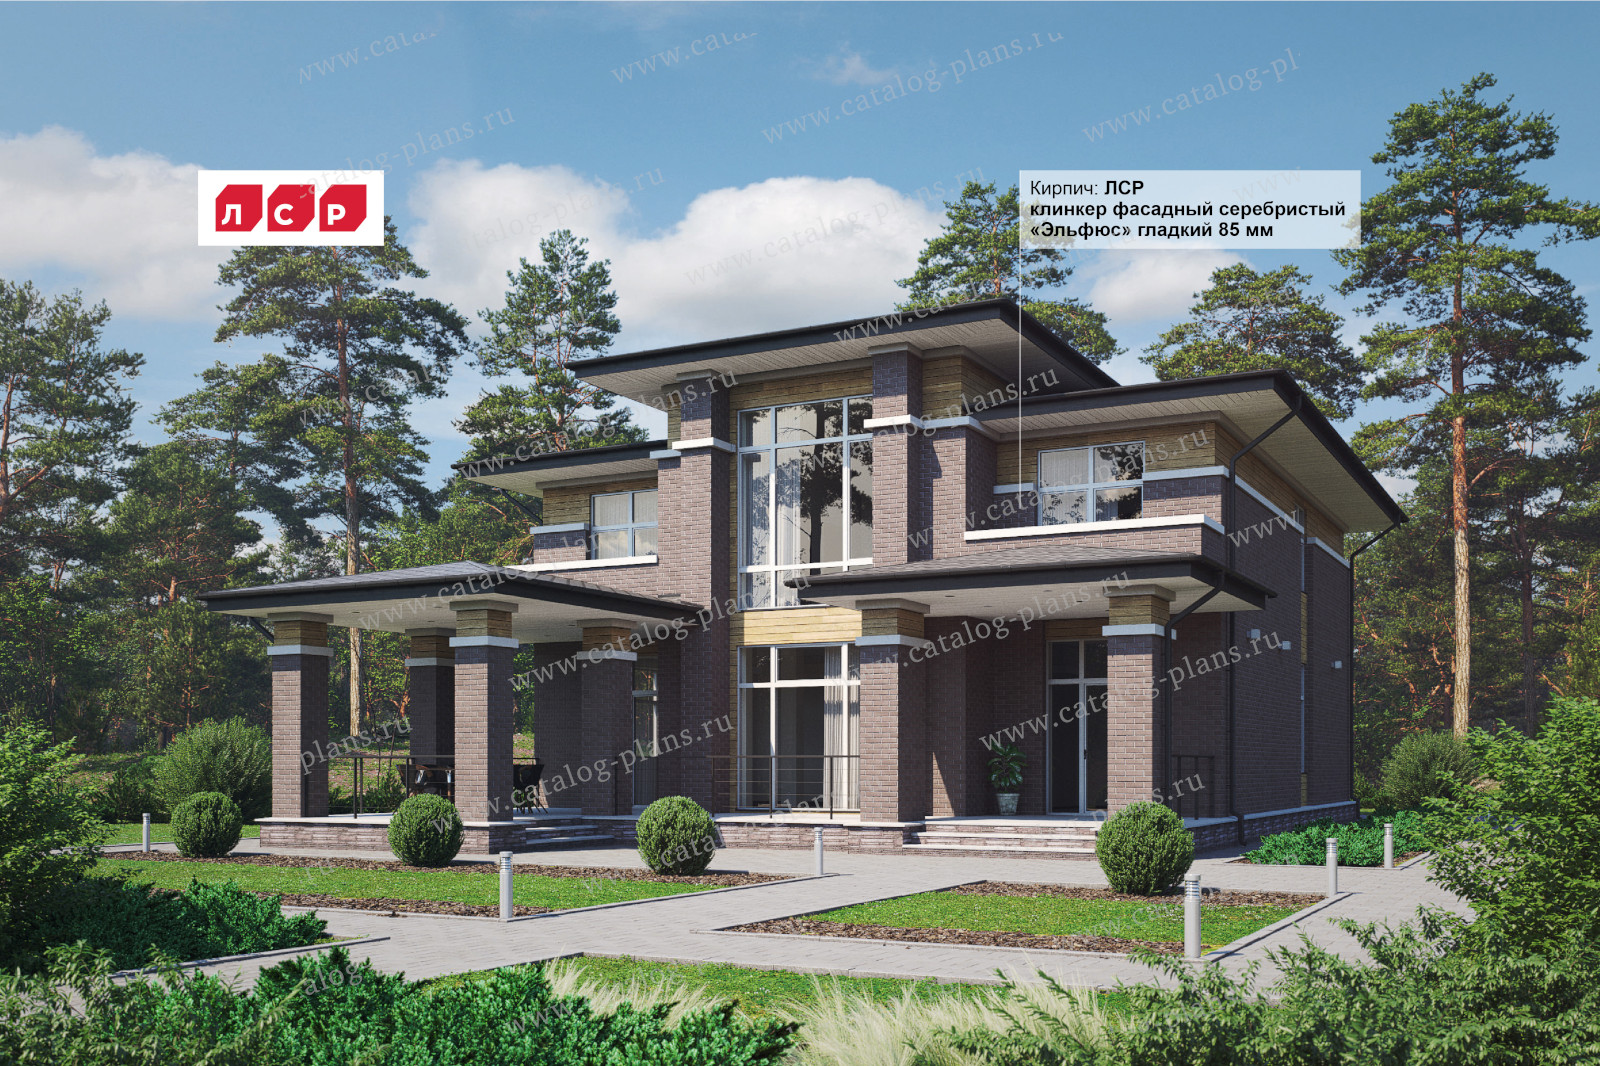 Проект 45-64NGL, жилой дом, материал - газобетонные блоки 400, количество этажей - 2, архитектурный стиль - в стиле райта, фундамент - монолитная ж/б плита